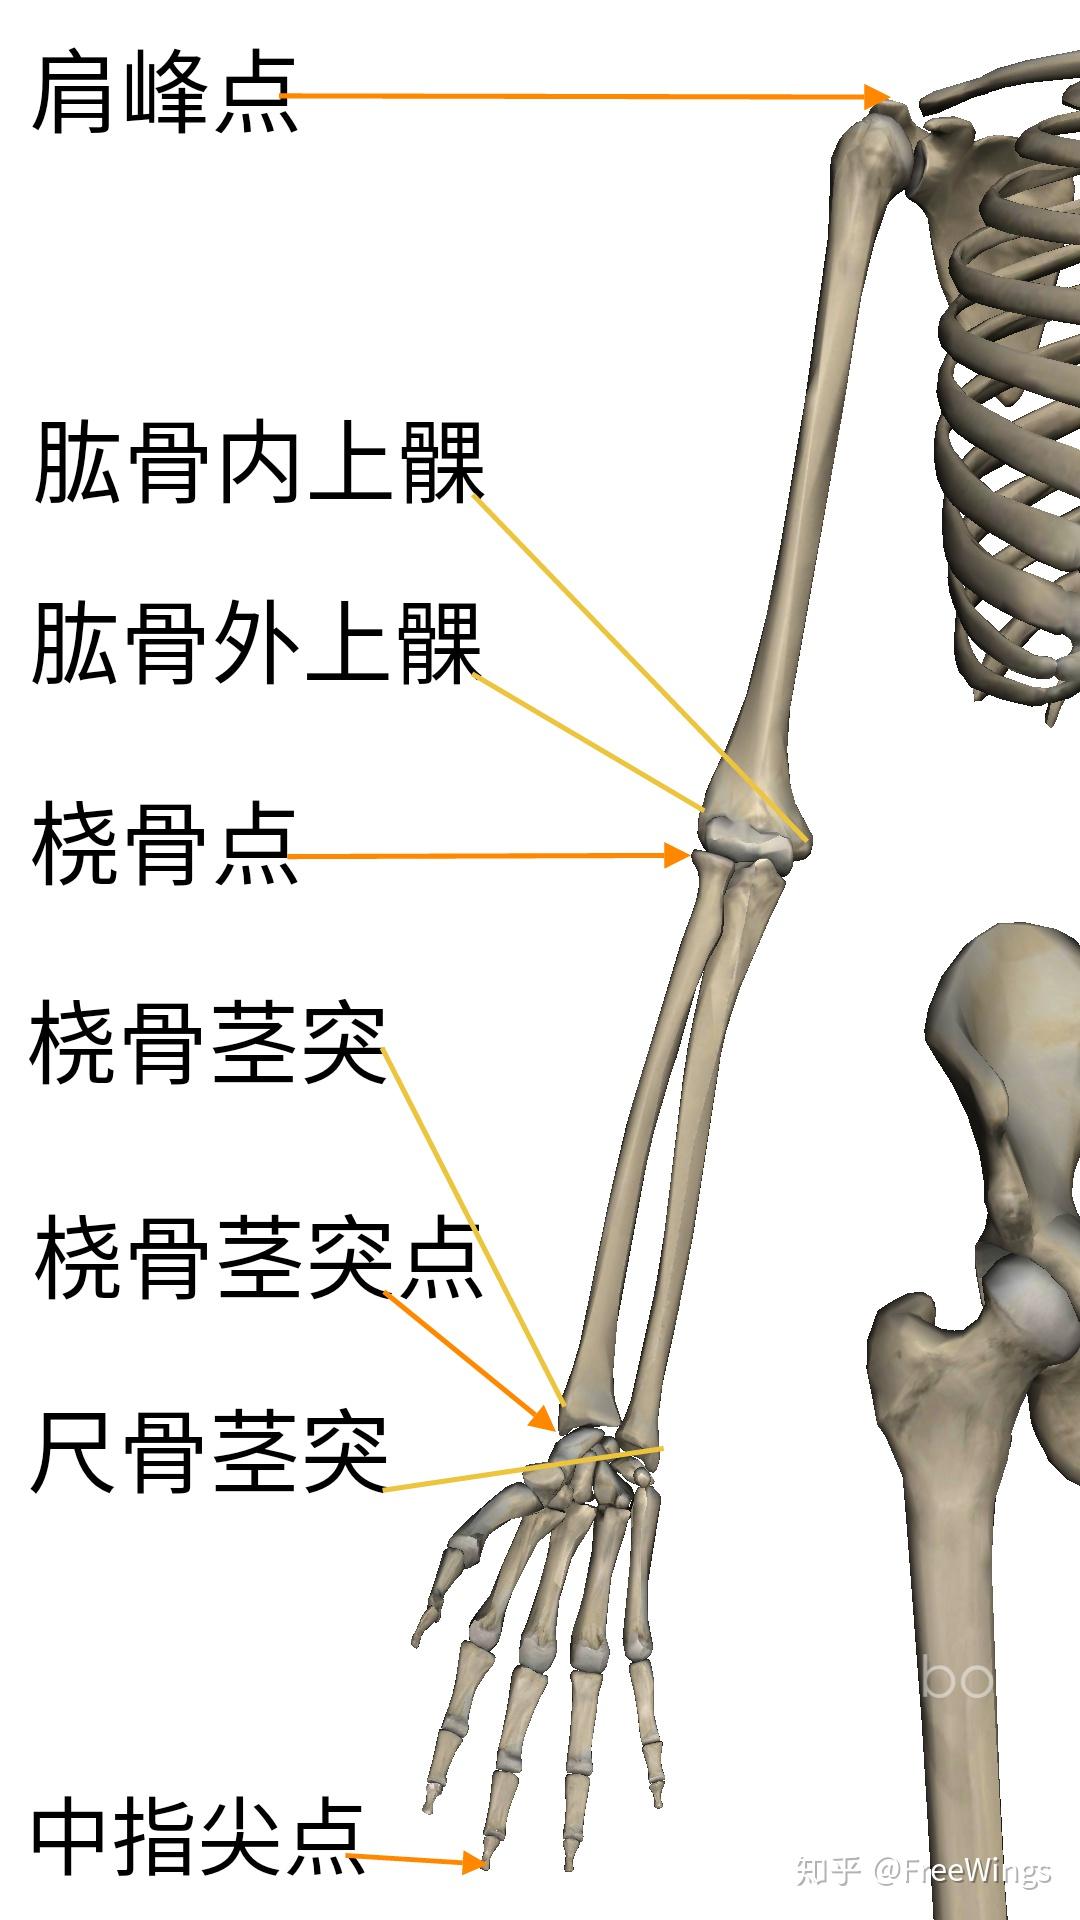 胳膊垂落&手掌贴在身体侧面&肘窝向前,肘关节后面外侧有一凹陷(肱桡